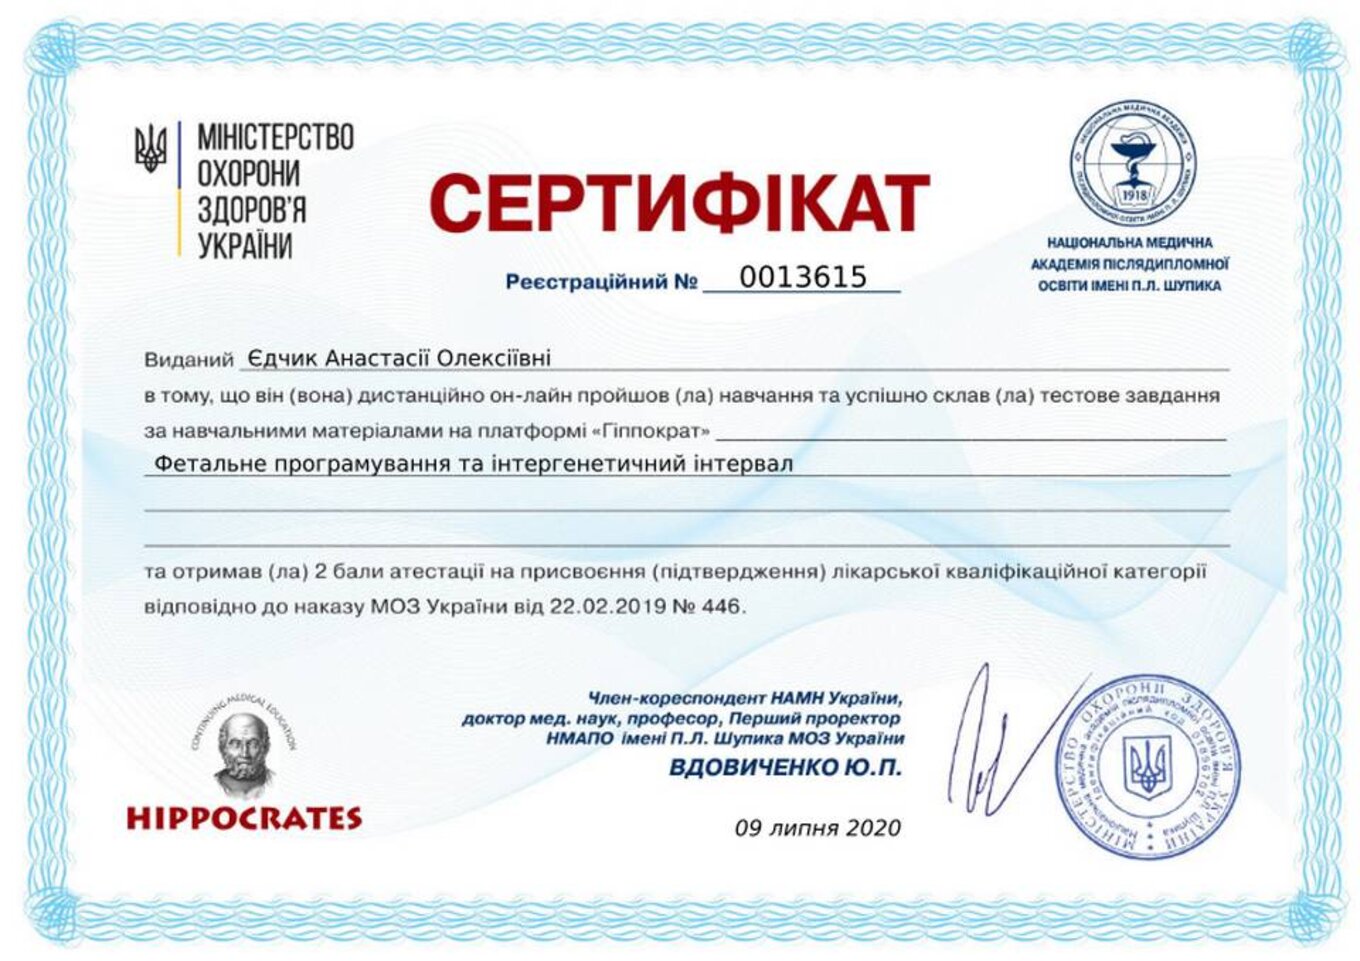 certificates/yedchik-anastasiya-oleksiyivna/erc-edchik-cert-72.jpg